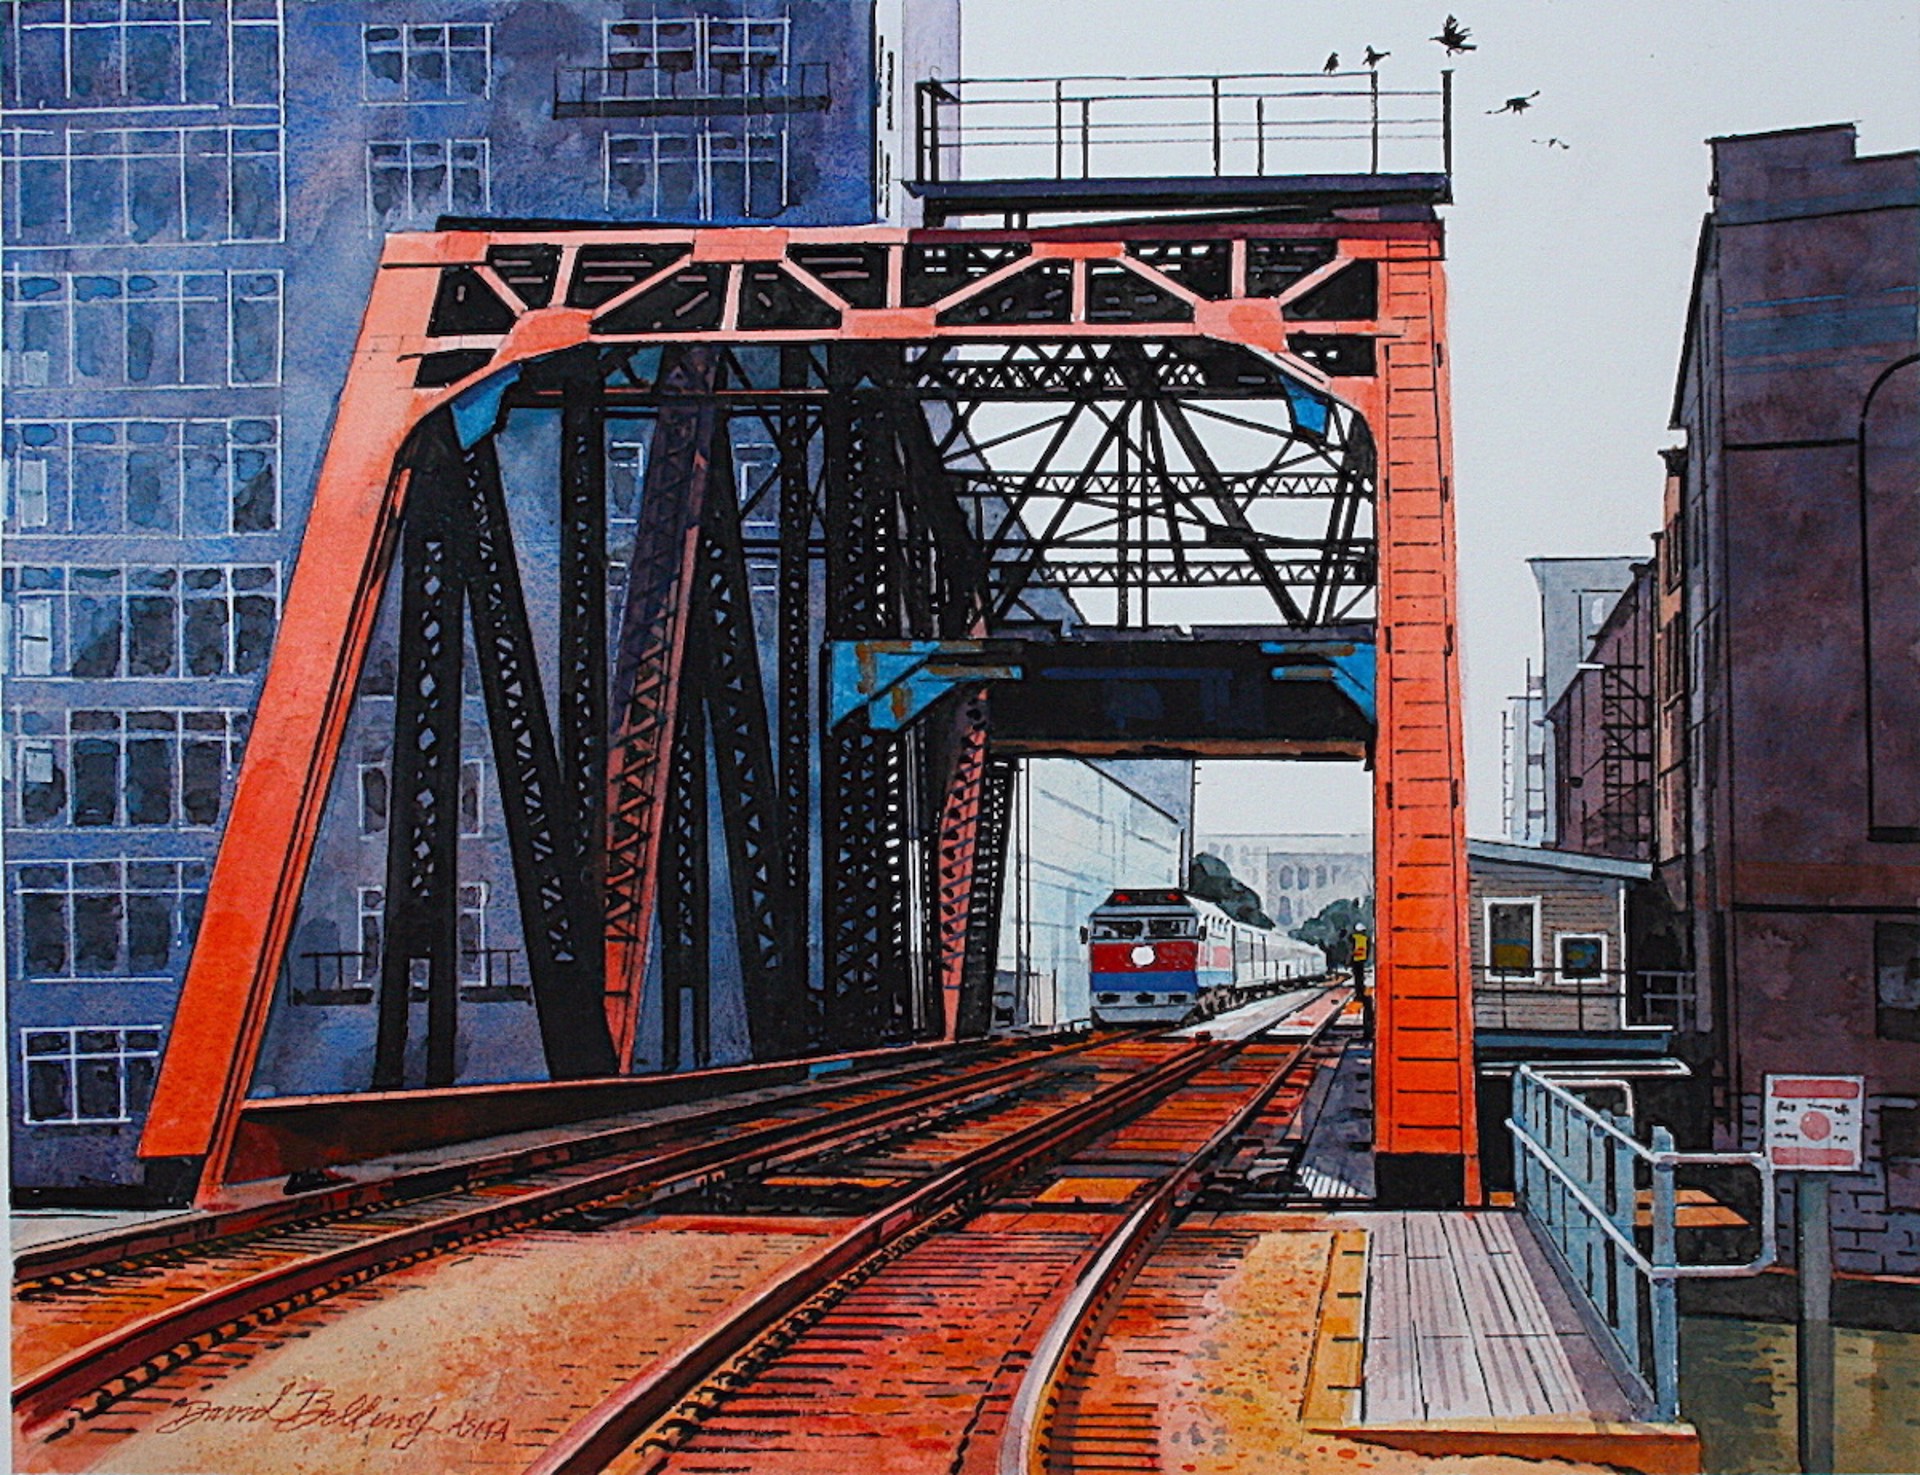 Swing Bridge by David Belling